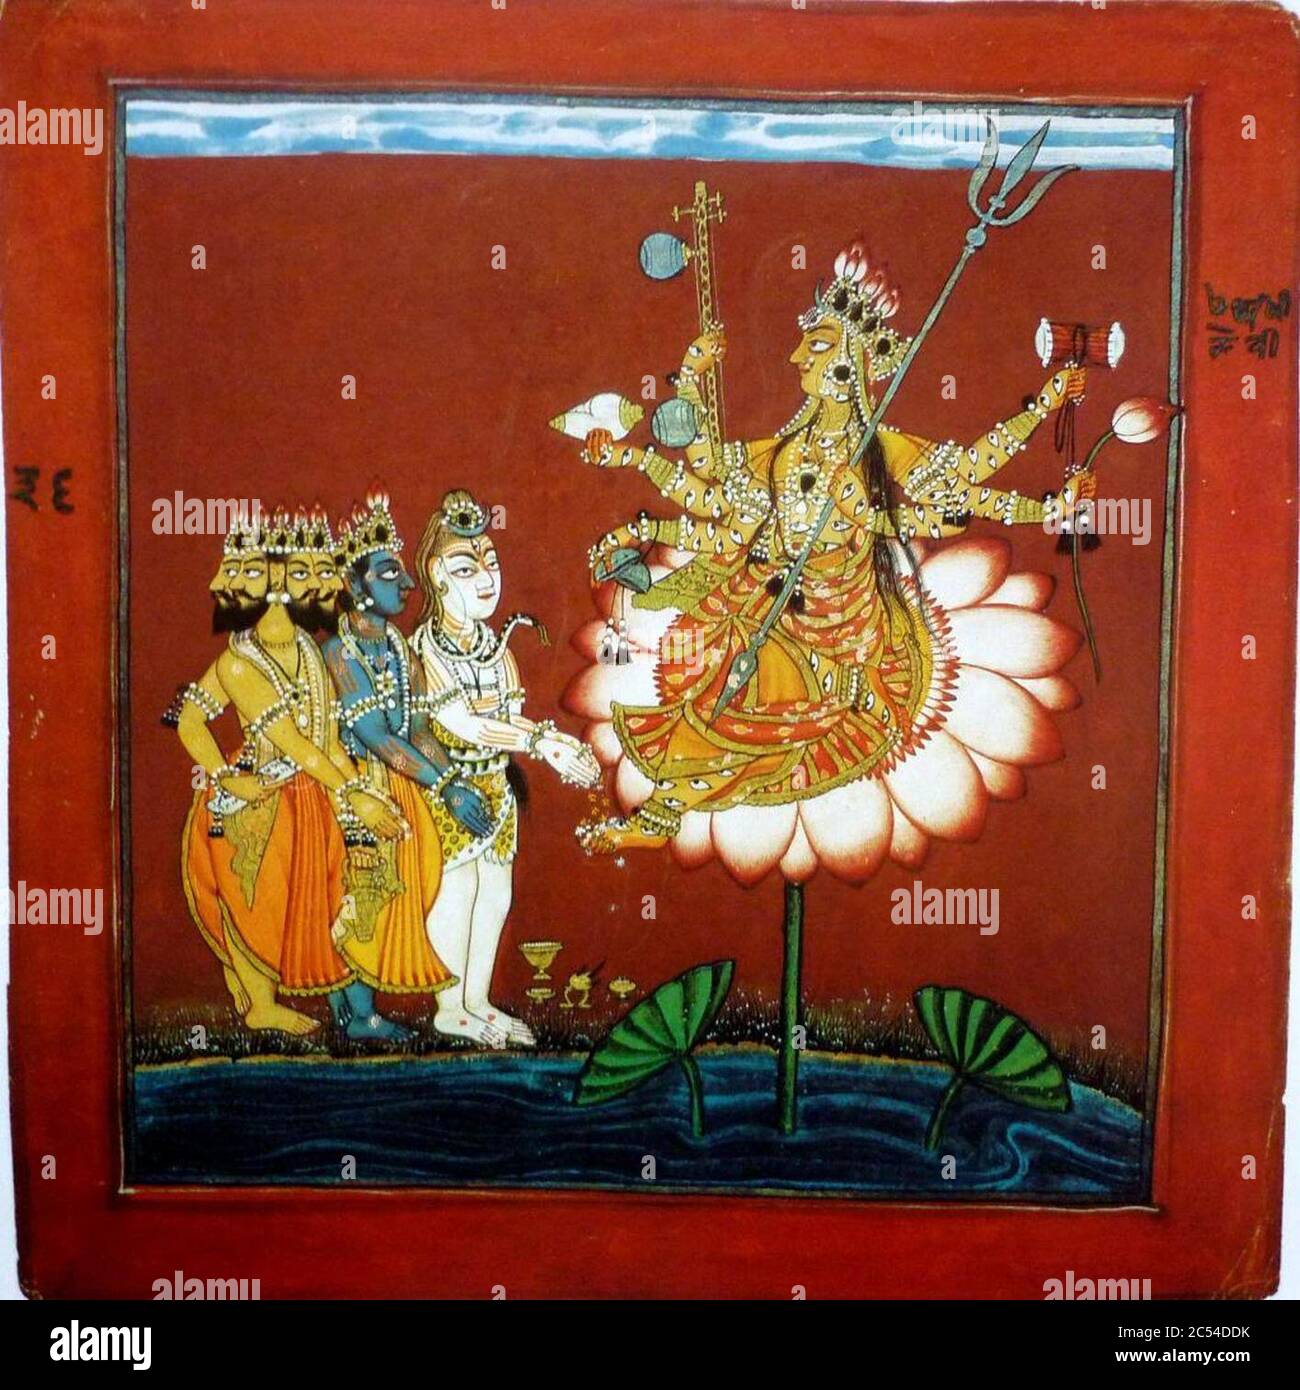 Indrakshi saß auf einer Lotusblume, von den Göttern verehrt. Stockfoto